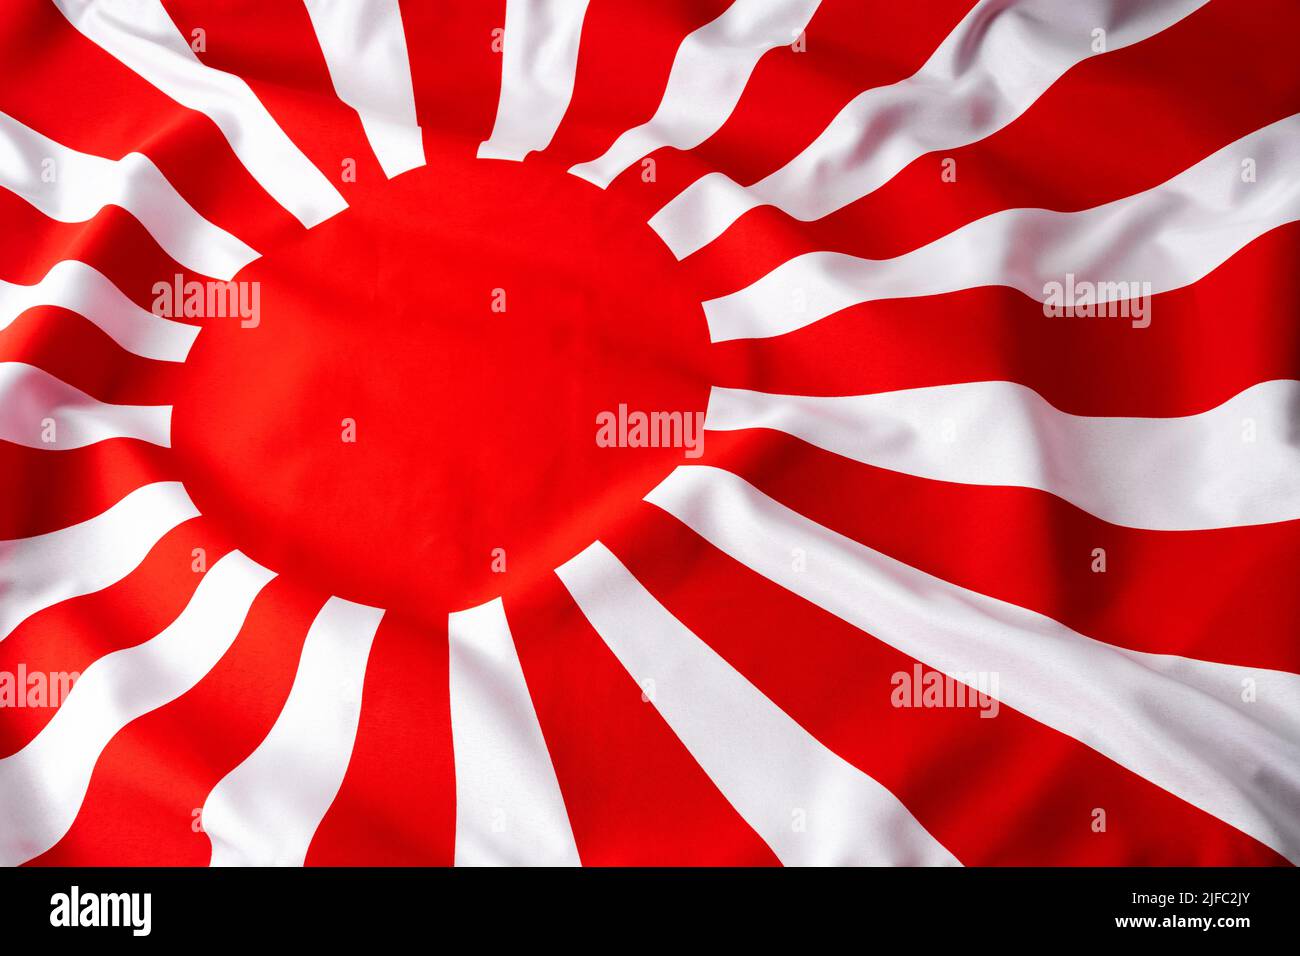 Bandera IMPERIAL DE LA GUERRA MUNDIAL II era Japón con sol rojo simbólico y rayos concepto para la cultura japonesa, la historia asiática y los orígenes patriotismos Foto de stock